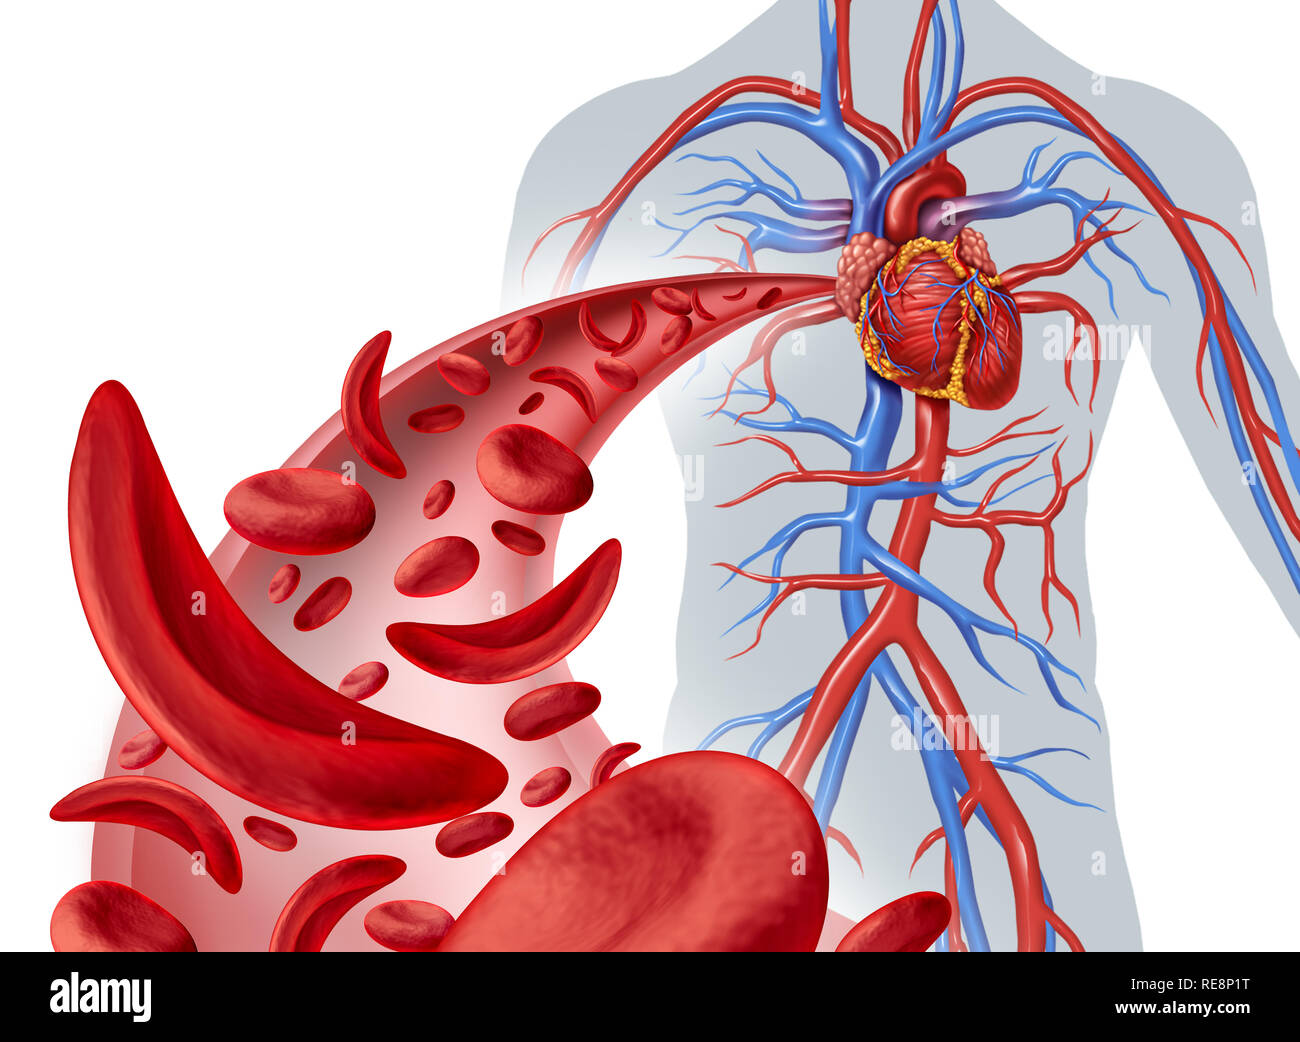 La drépanocytose et la circulation cardiaque comme une maladie de l'anémie avec hémoglobine normales et anormales dans une artère du coeur humain avec l'anatomie cardiovasculaire. Banque D'Images